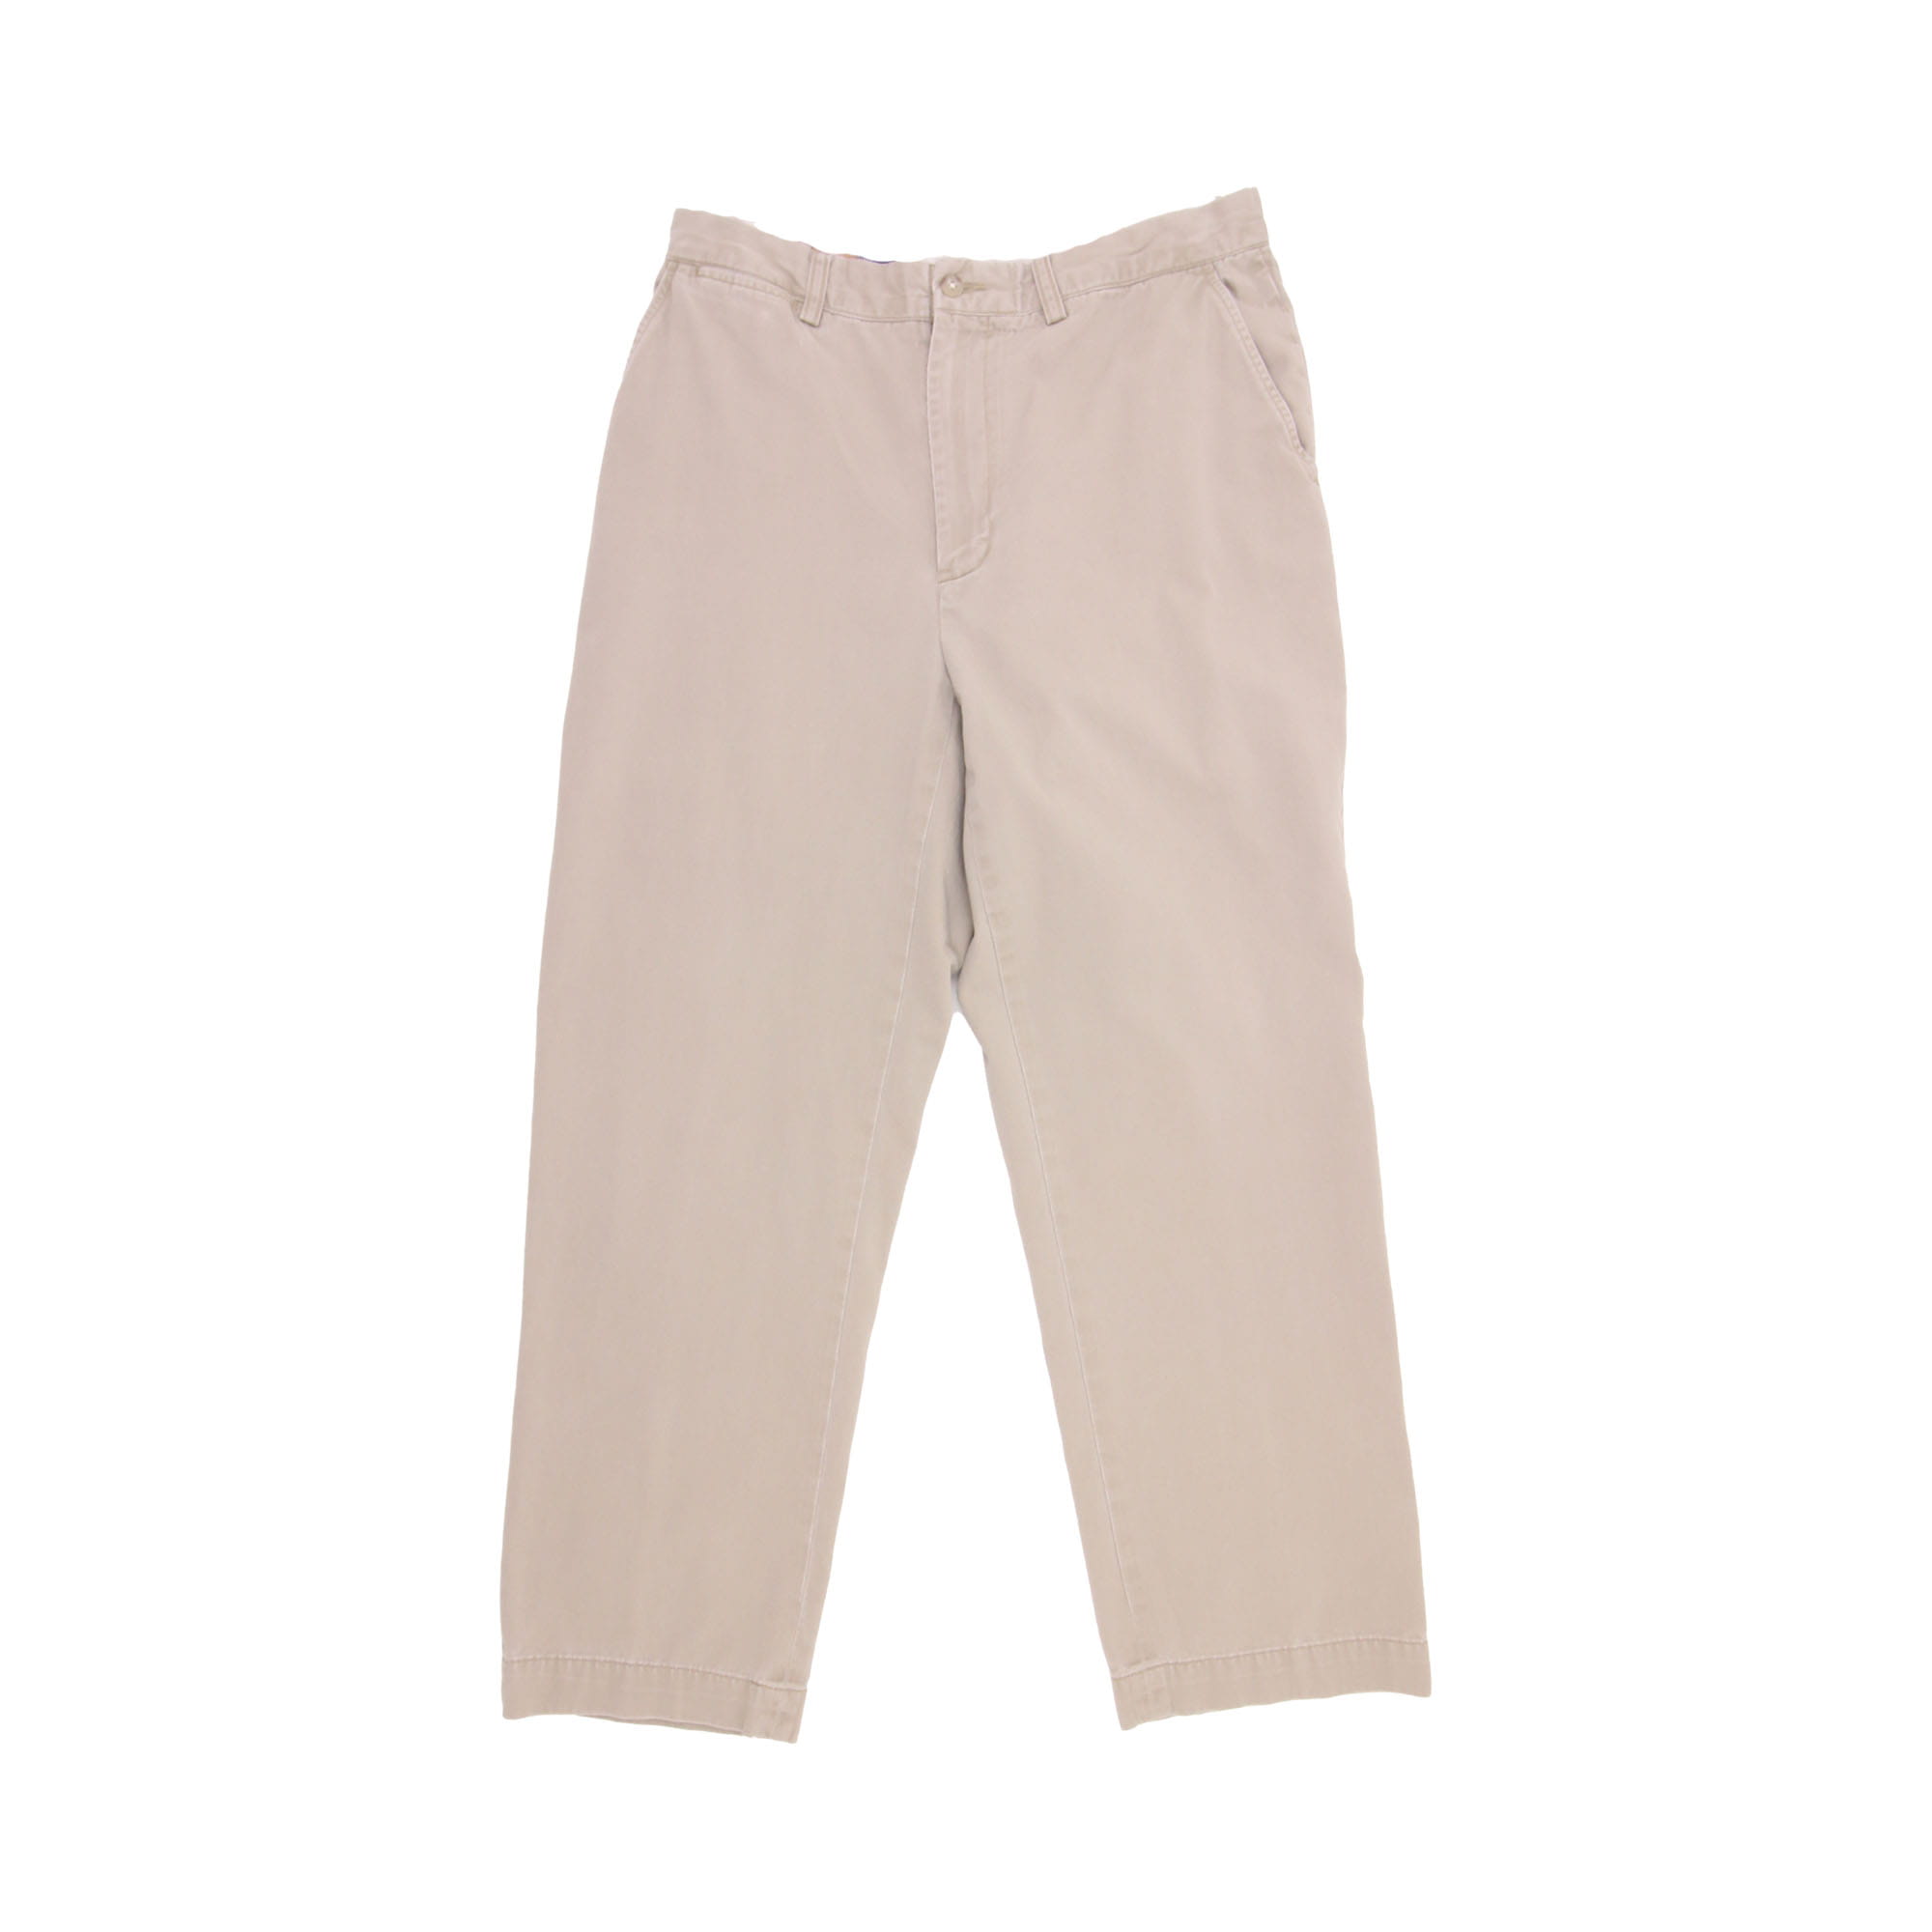 Polo Ralph Lauren Trousers Beige - W32 L30